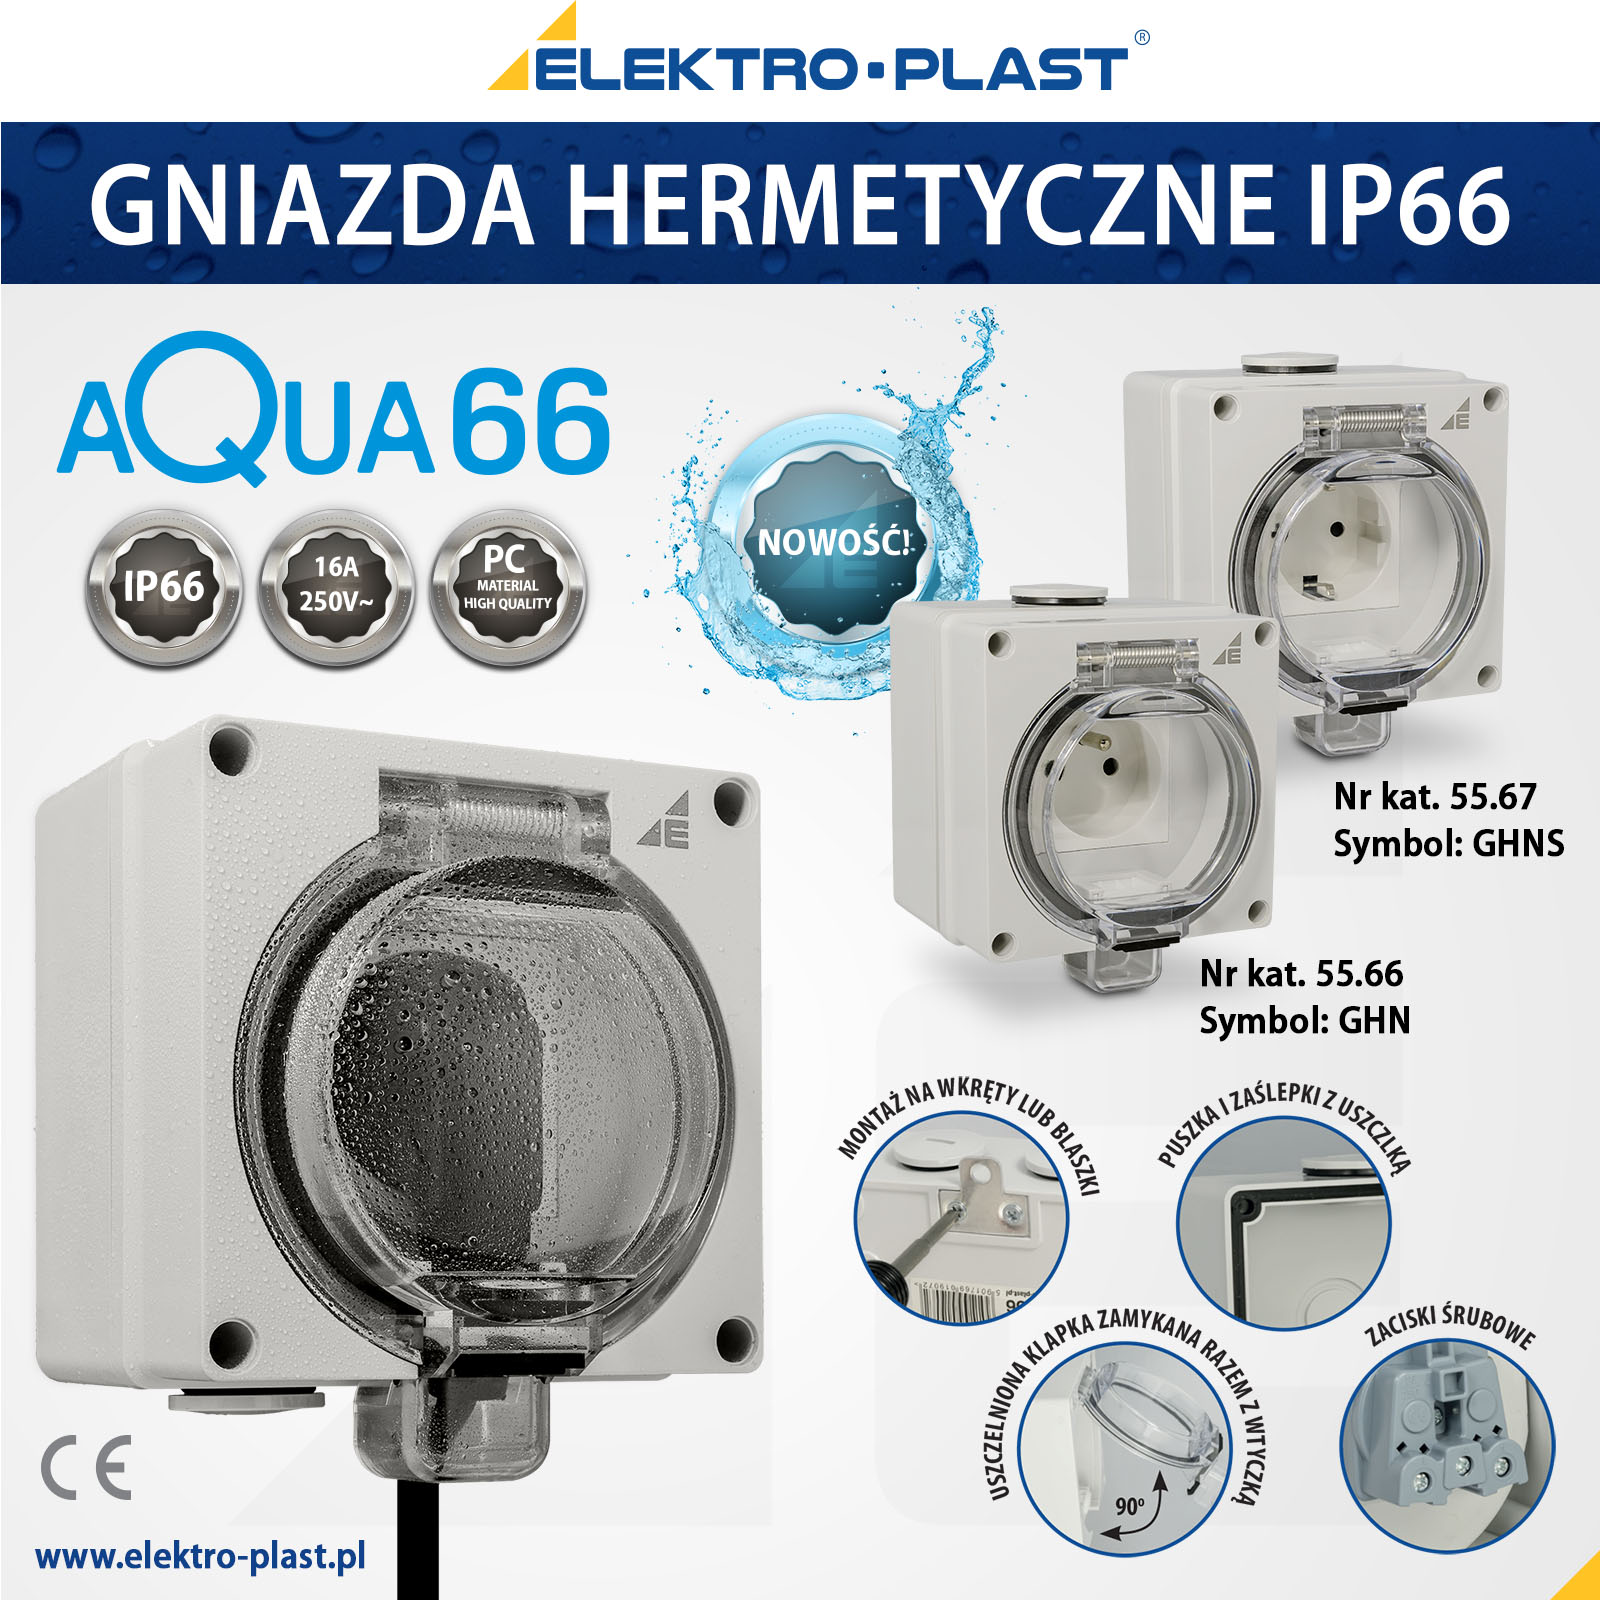 AQUA66, gniazdo hermetyczne, IP66, elektro-plast, elektroplast, wodoszczelne